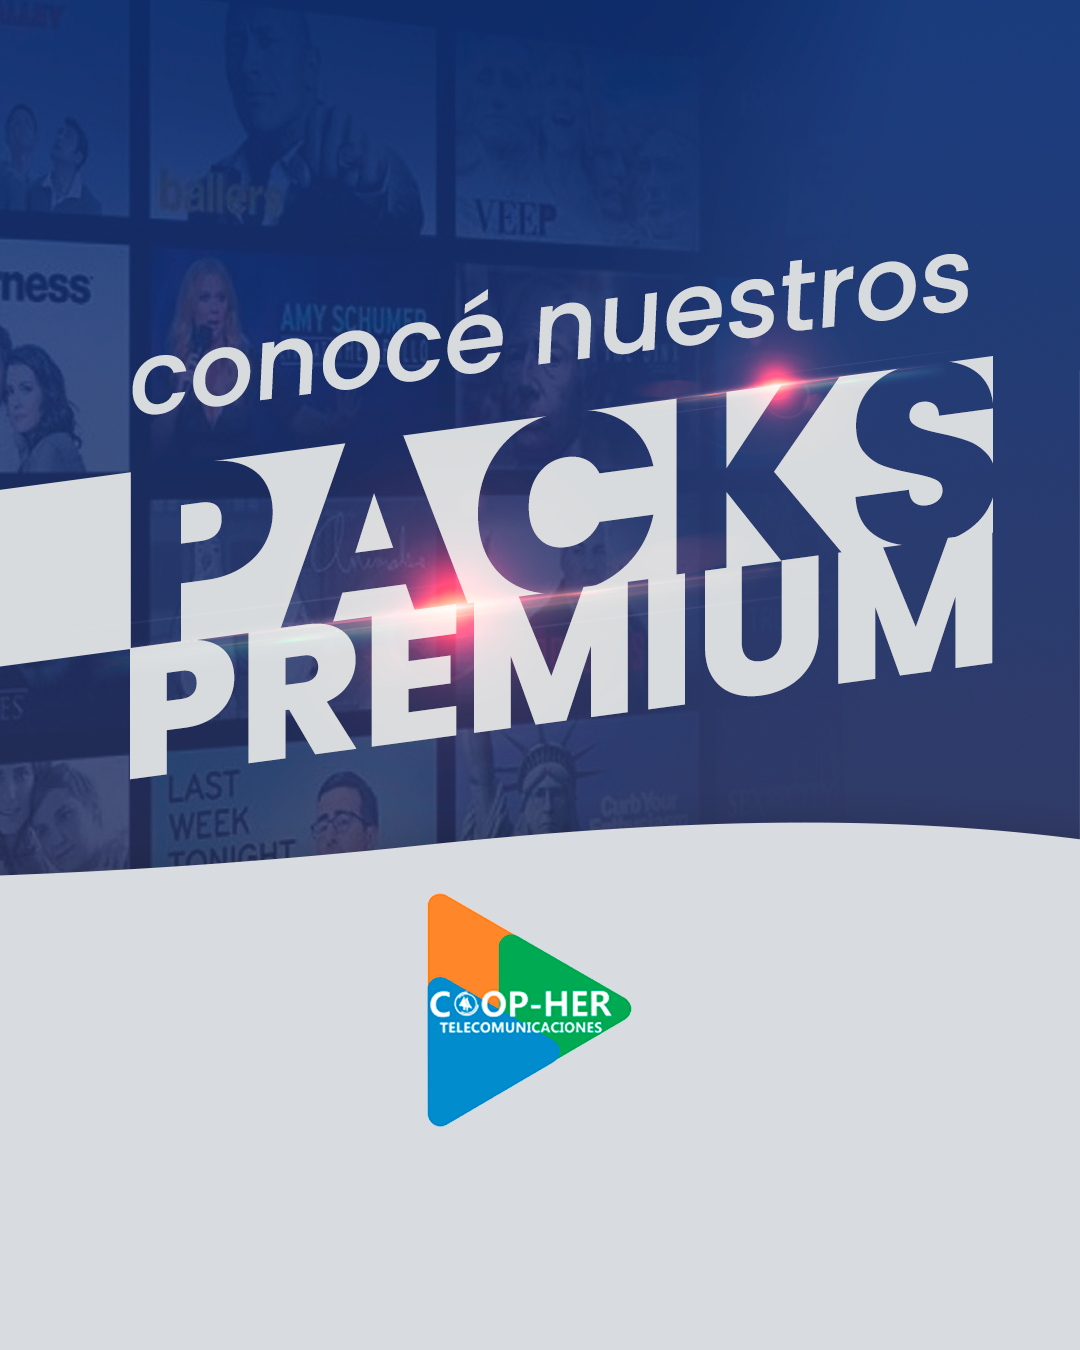 packs-premium-1350_01